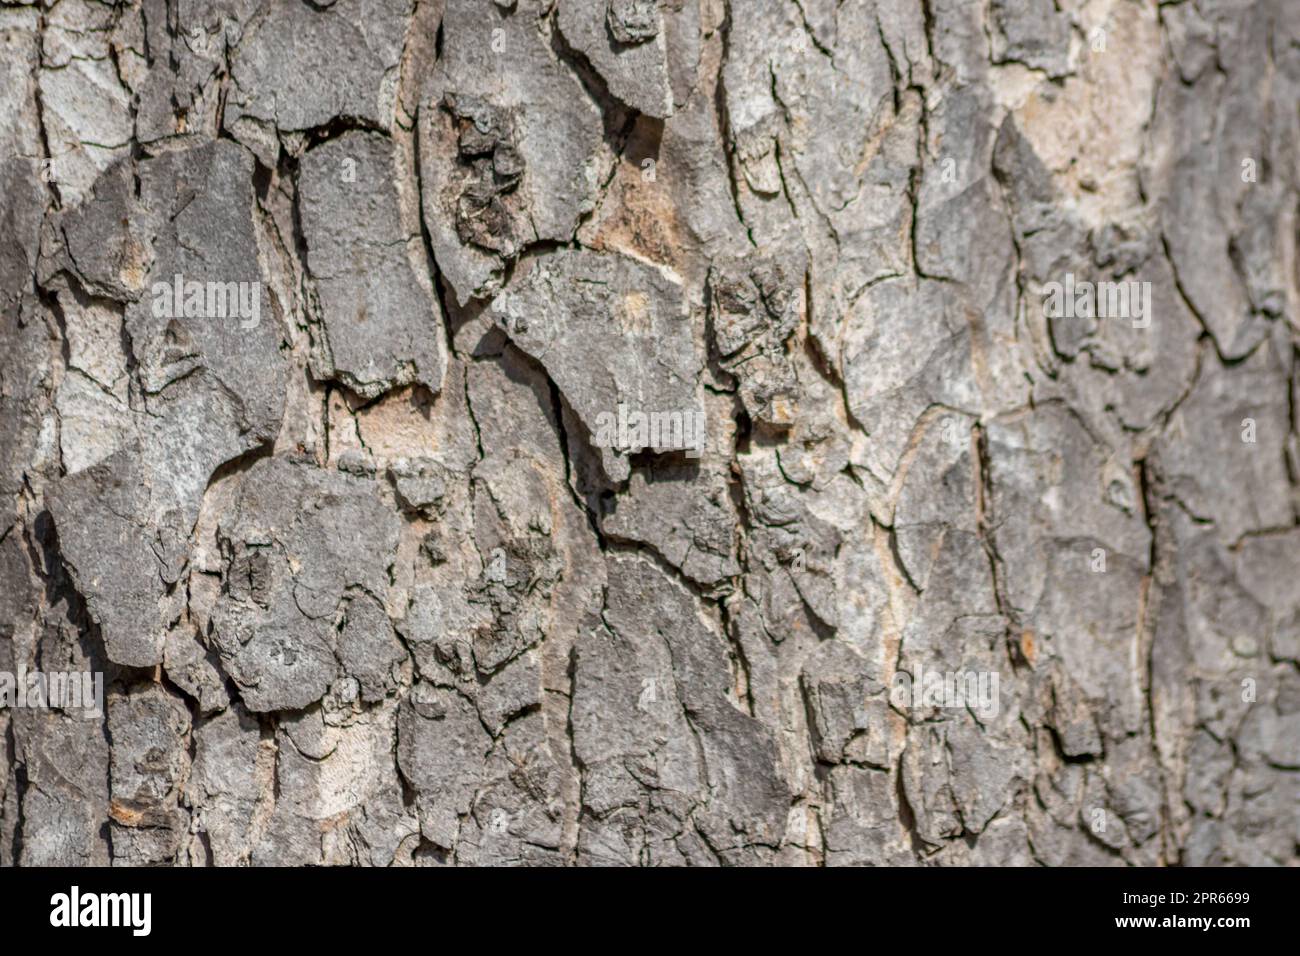 Baumrindenmakro mit feinen natürlichen Strukturen und raue Baumrinde als natürlicher und ökologischer Hintergrund zeigt eine wunderschöne Holzstruktur mit Narben und Schutz als Lebensraum für kleine Insekten Stockfoto